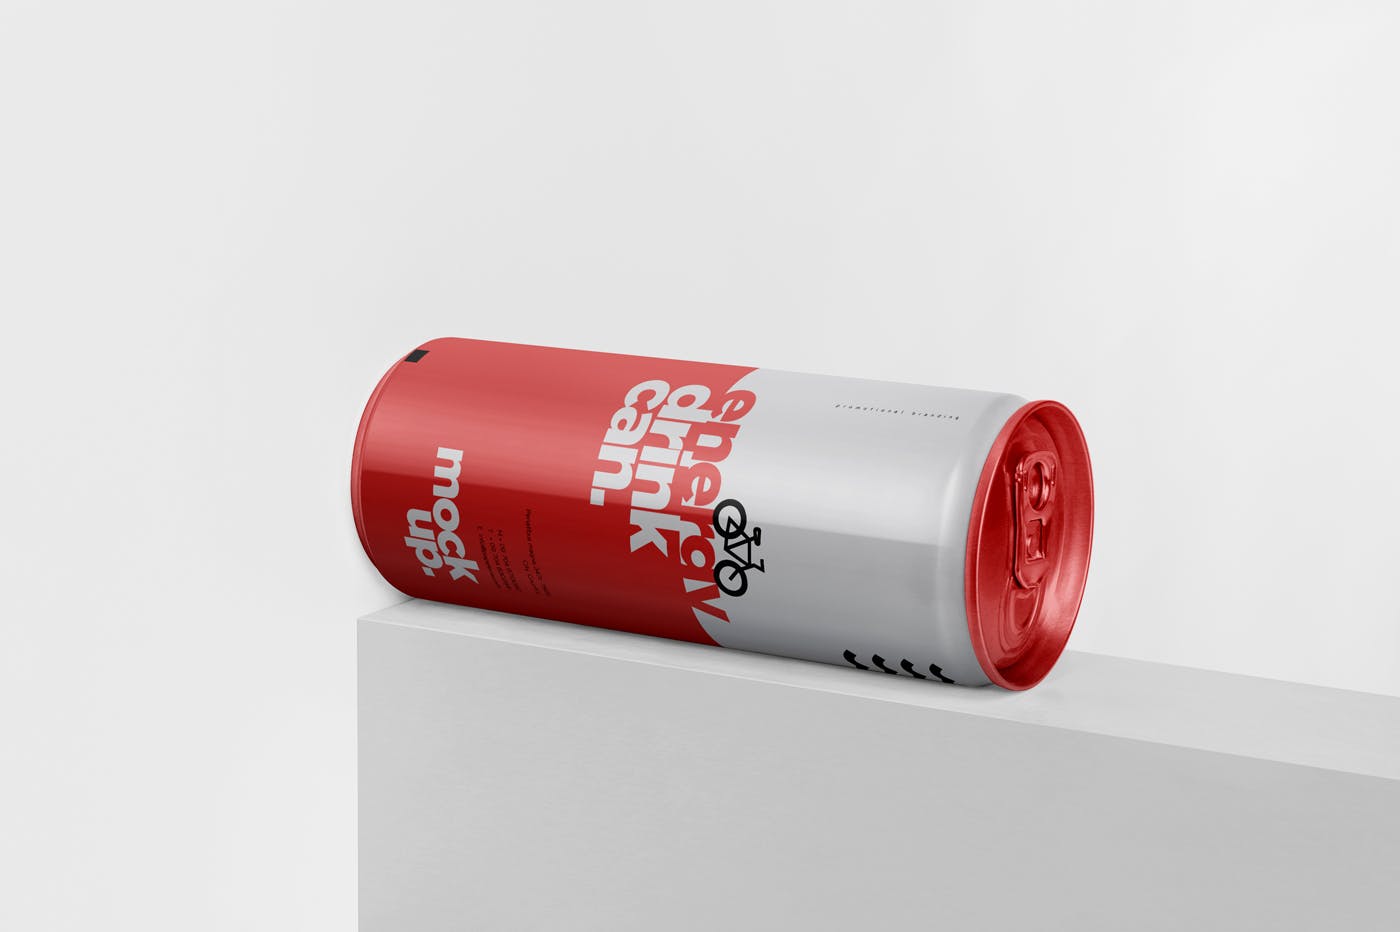 能量饮料易拉罐罐头外观设计素材库精选模板 Energy Drink Can Mock-Up – 250 ml插图(2)